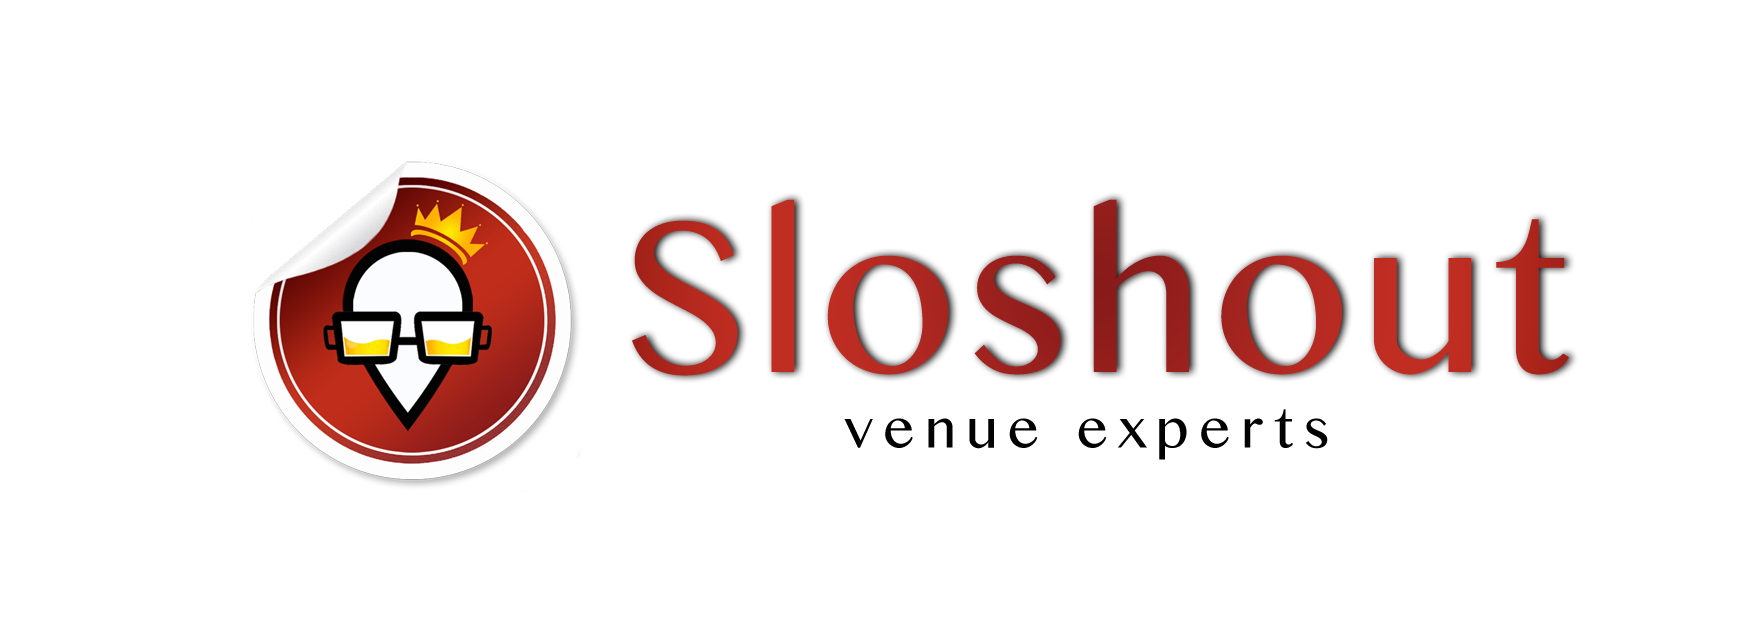 Sloshout Logo